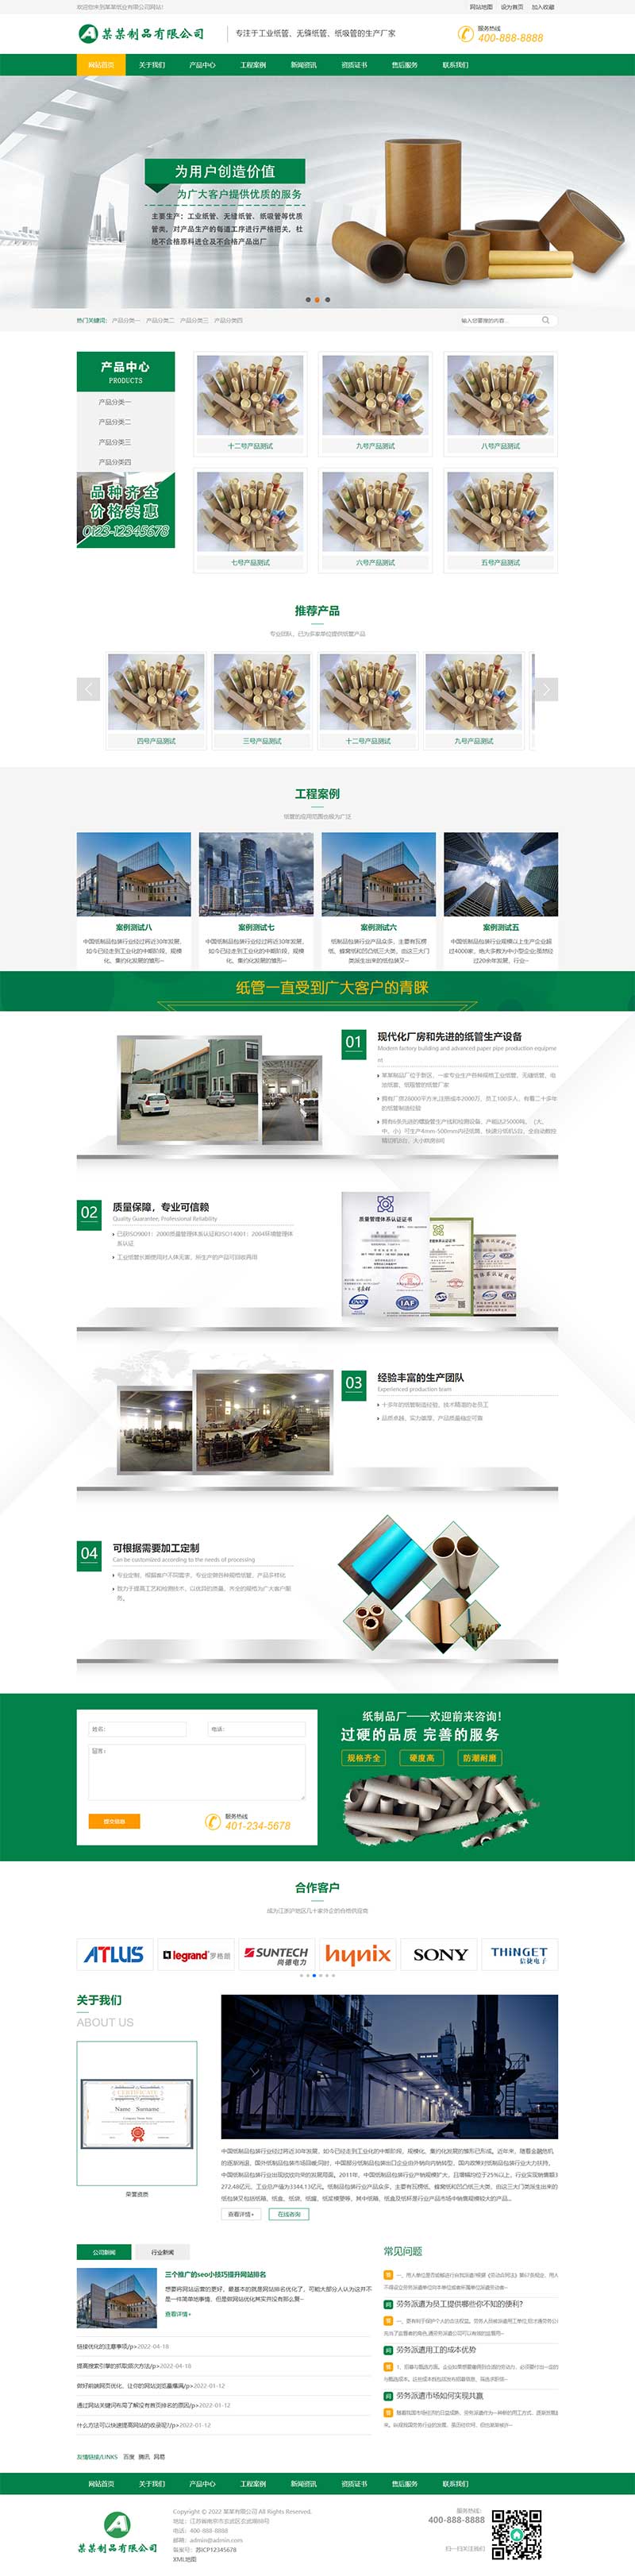 绿色营销型通用企业网站模板 工业纸管纸业制造网站源码下载